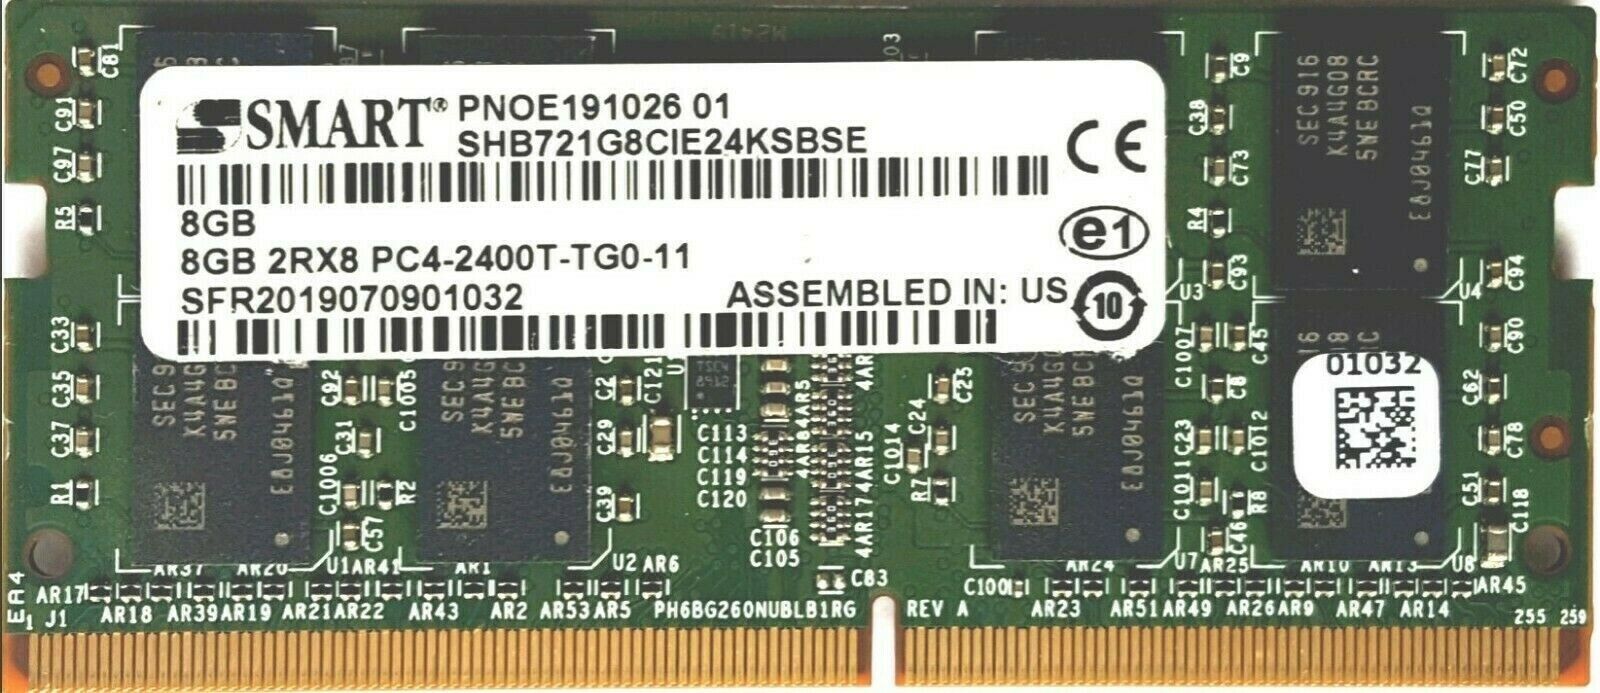 SMART 8GB DDR4 SODIMM Memory Module SHB721G8CIE24KSBSE PC4-2400T 260Pin